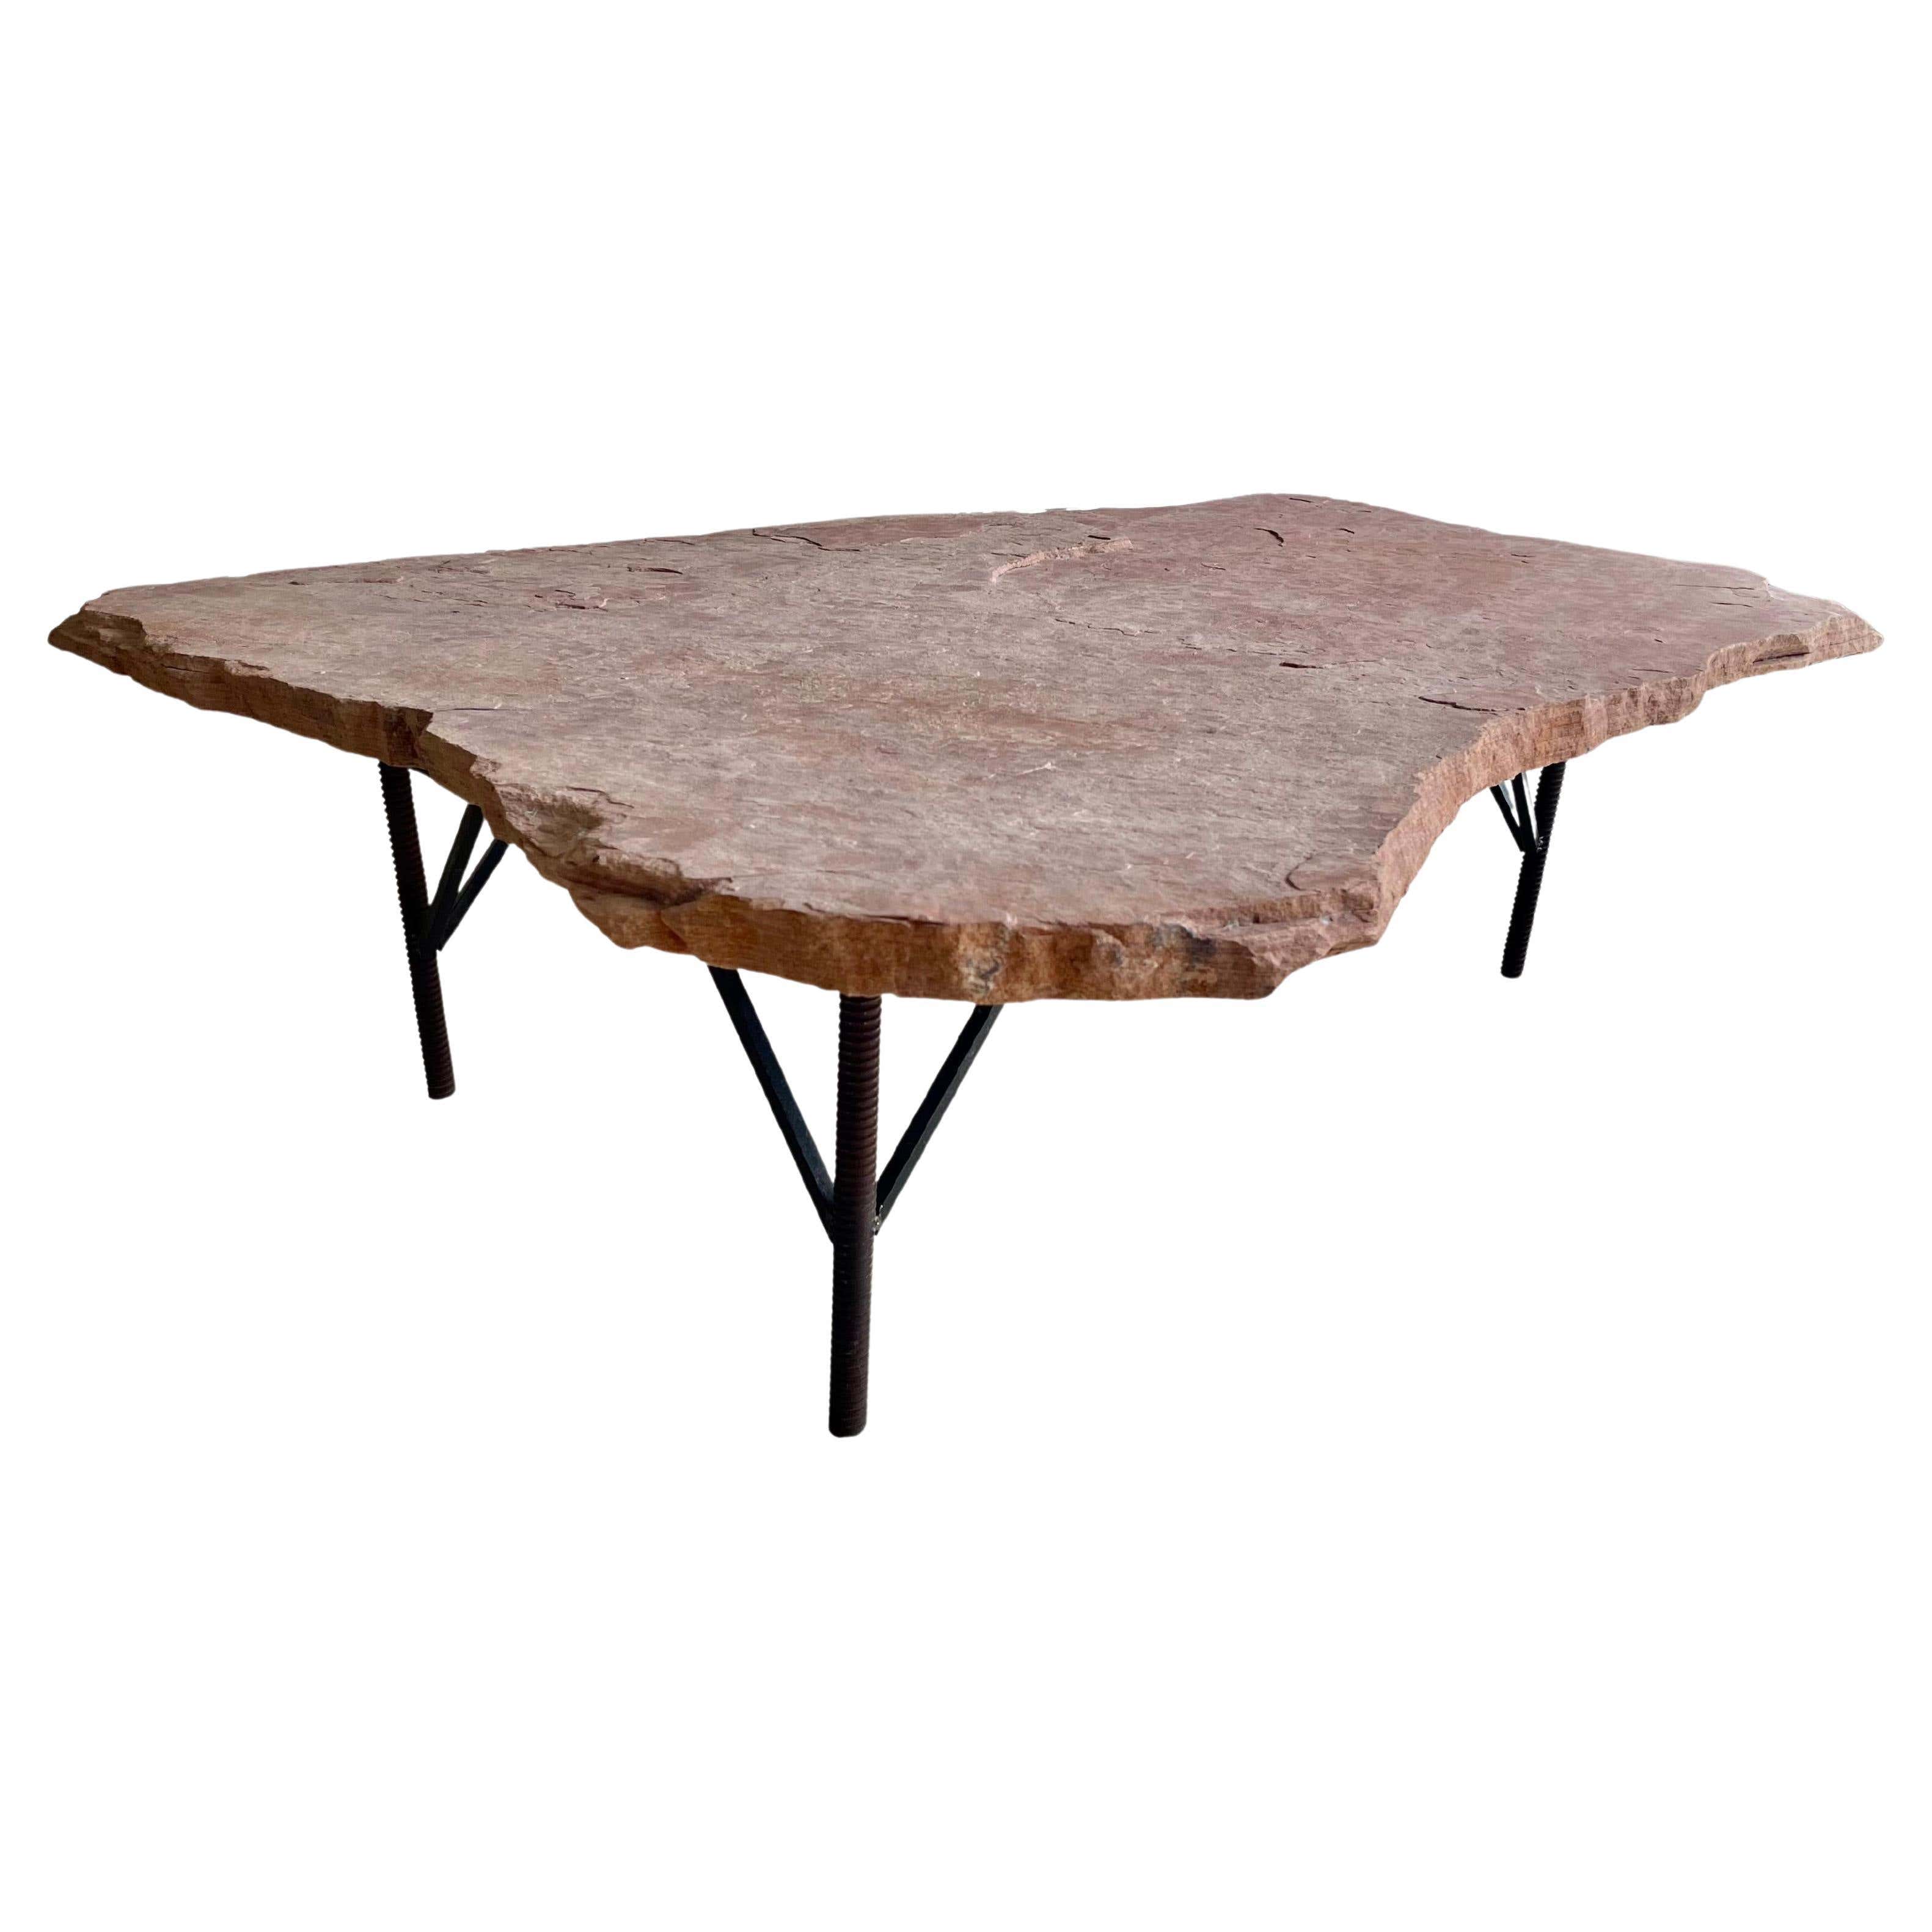 Tavolino da caffè rustico in pietra arenaria Rosa, rialzato su gambe in ferro